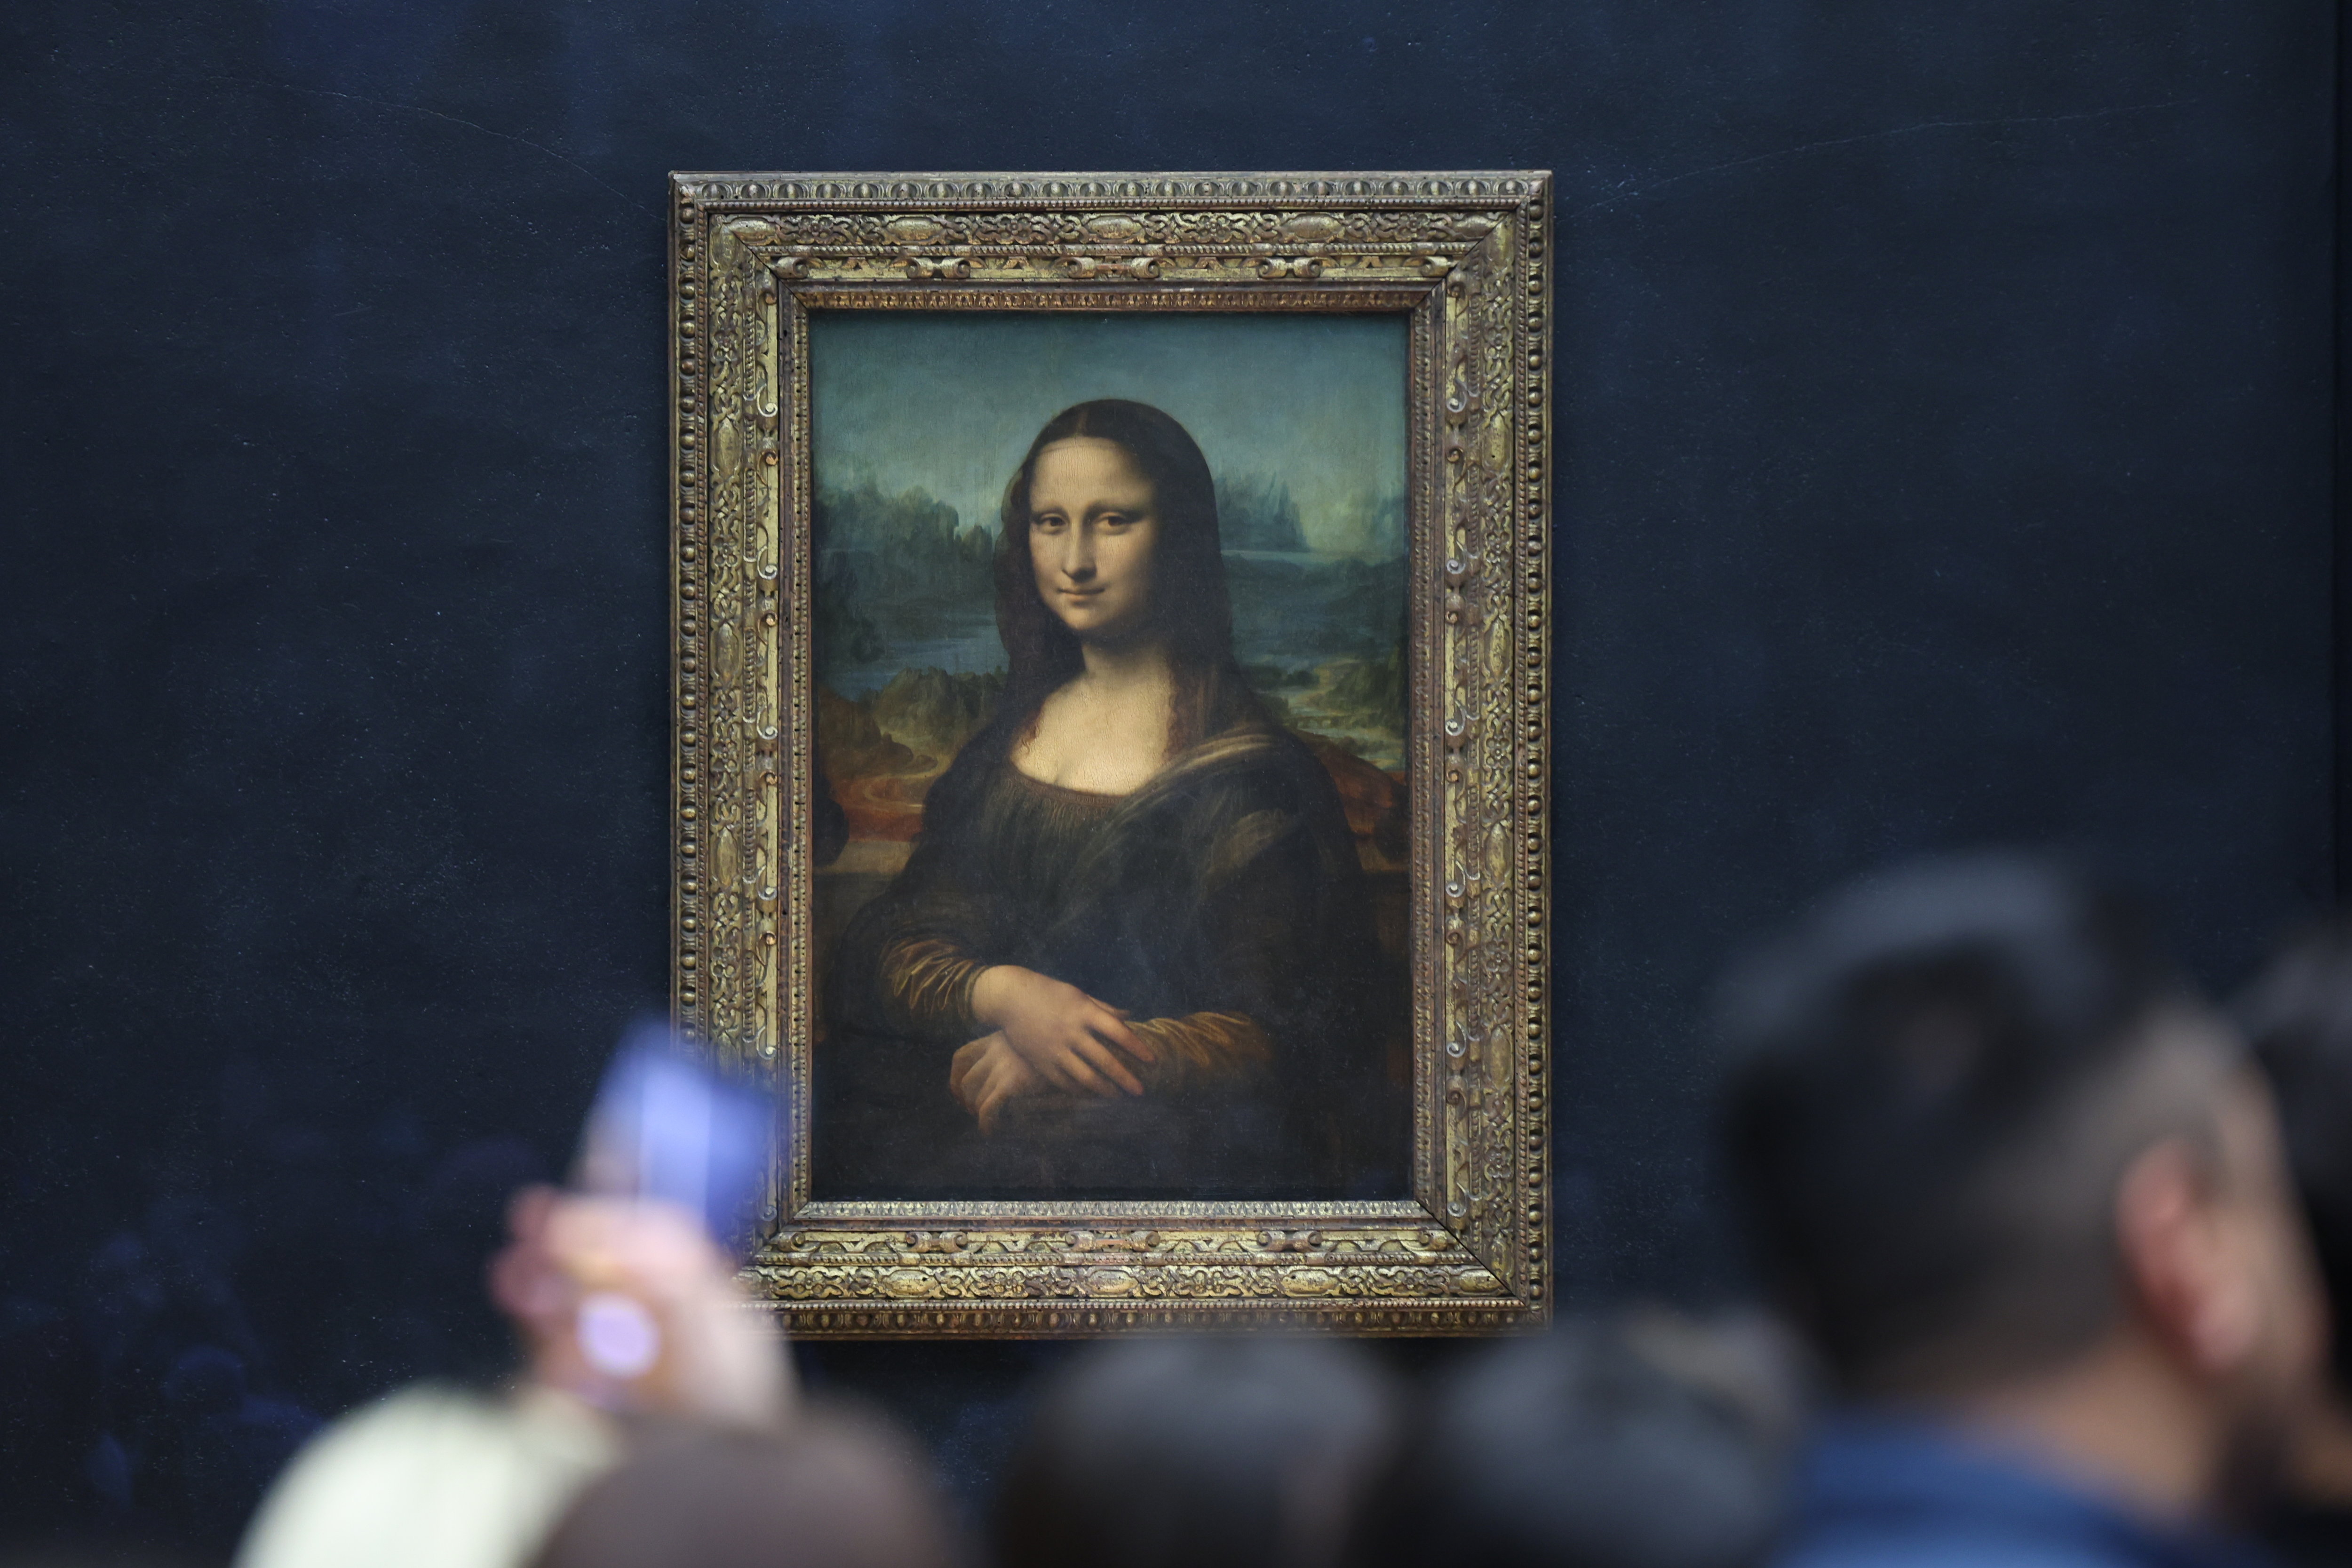 "La Joconde", chef-d'œuvre de Léonard de Vinci, est au Louvre depuis 1797. LP/Arnaud Journois